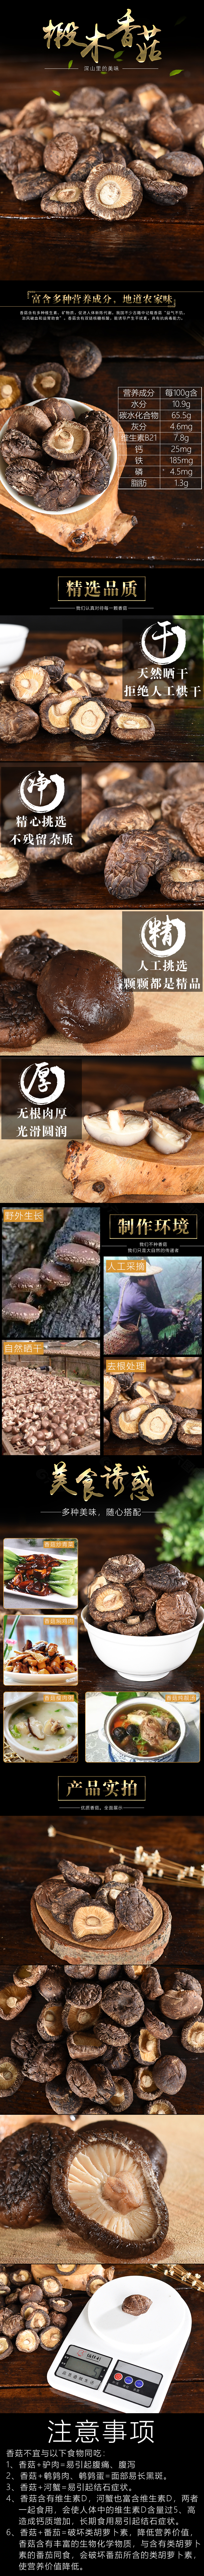 香菇土特产淘宝详情页